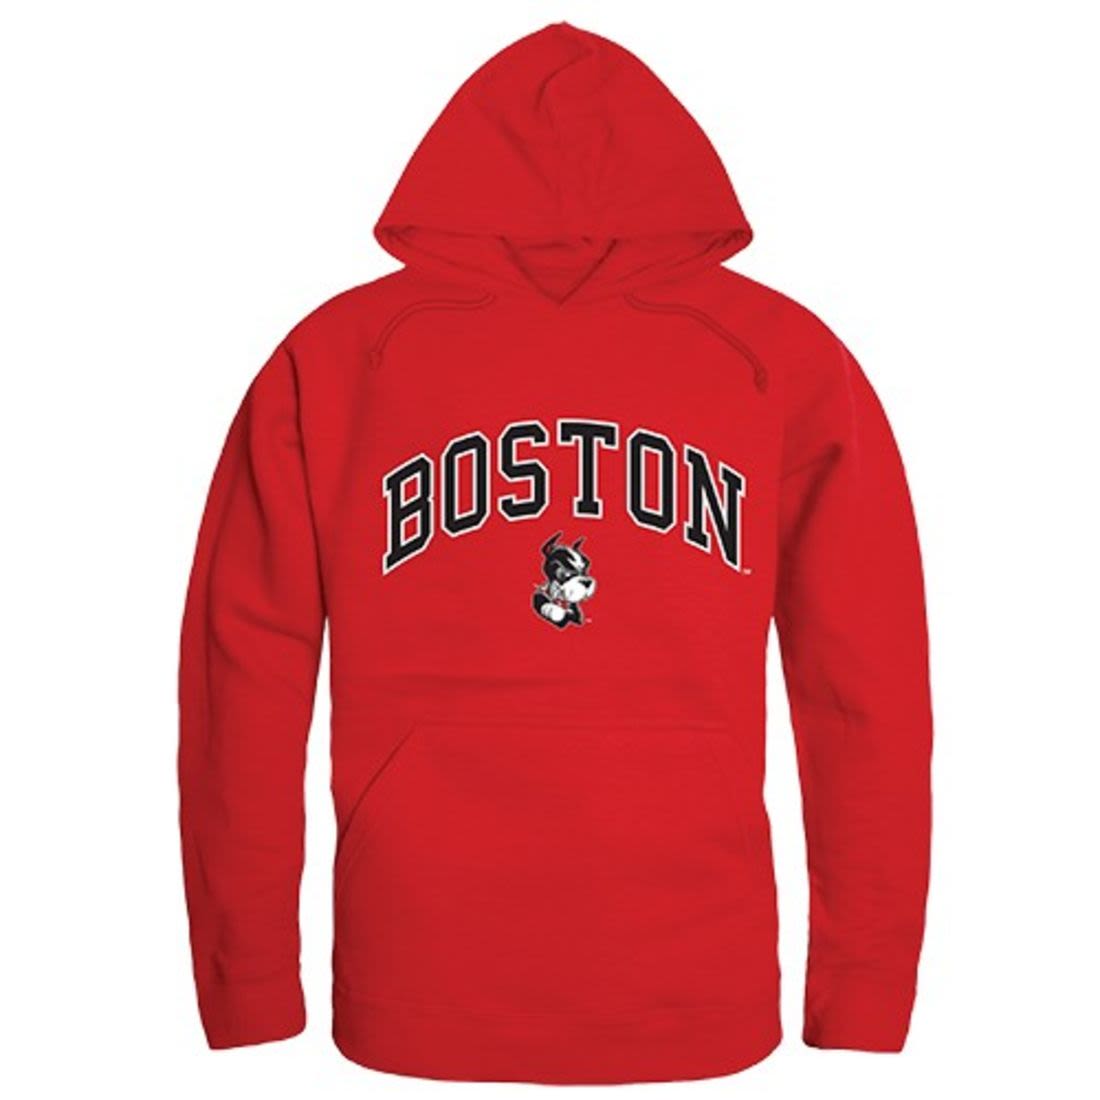 Boston University TerriersÊ Campus Hoodie Sweatshirt Red-Campus-Wardrobe